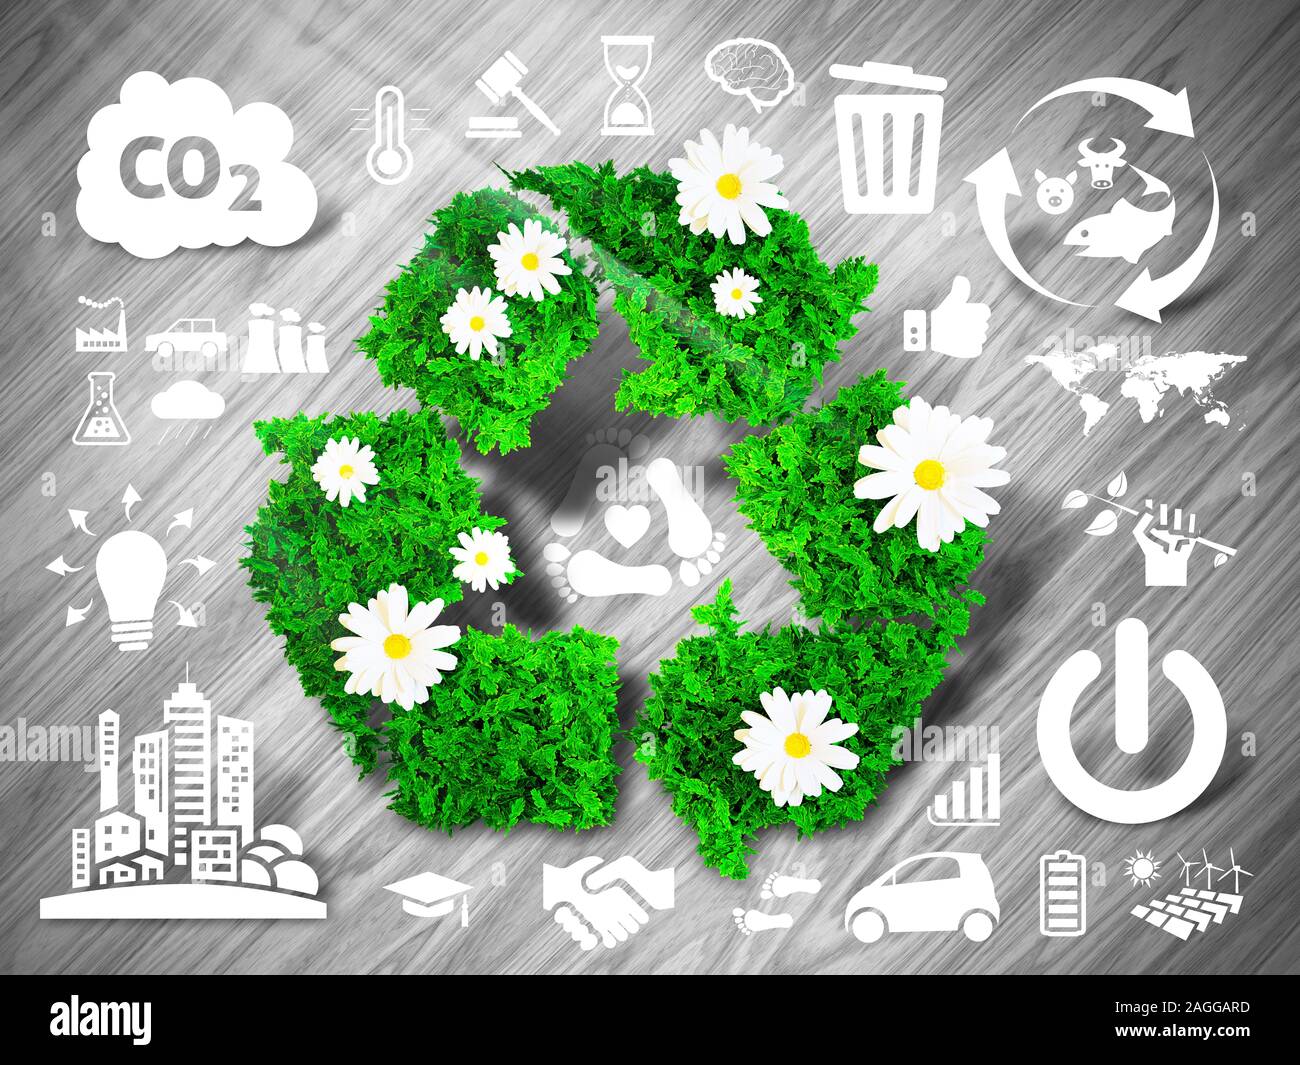 Réutilisez le signe vert gris sur fond de bois avec les icônes d'eco. 3D illustration. Banque D'Images